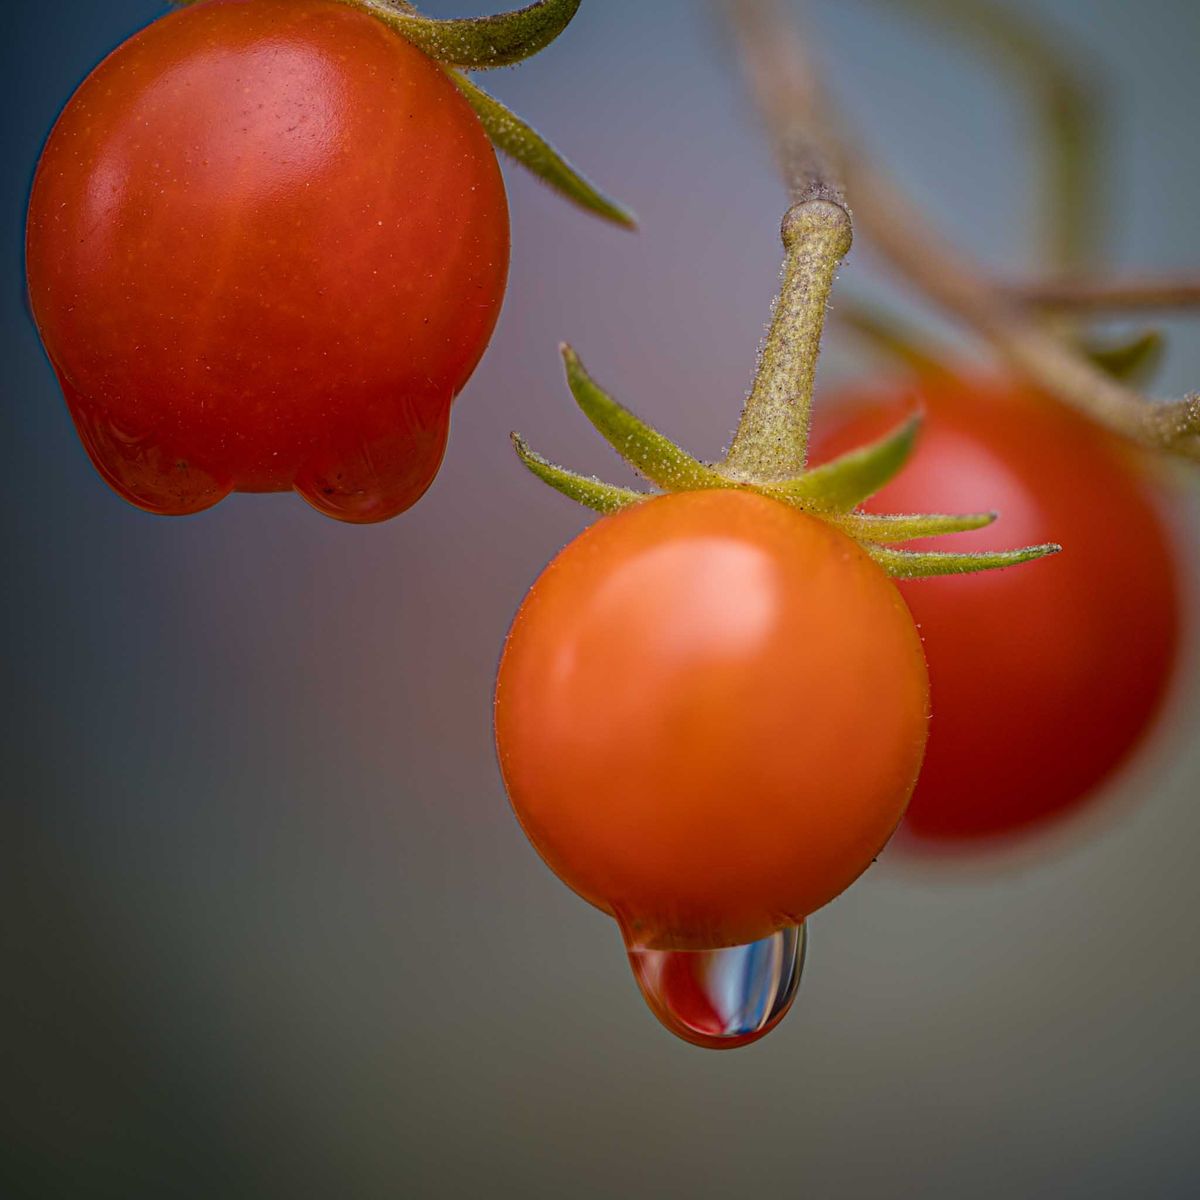 31.8.202 - Der August geht mit Dauerregen und den letzten eigenen Tomaten